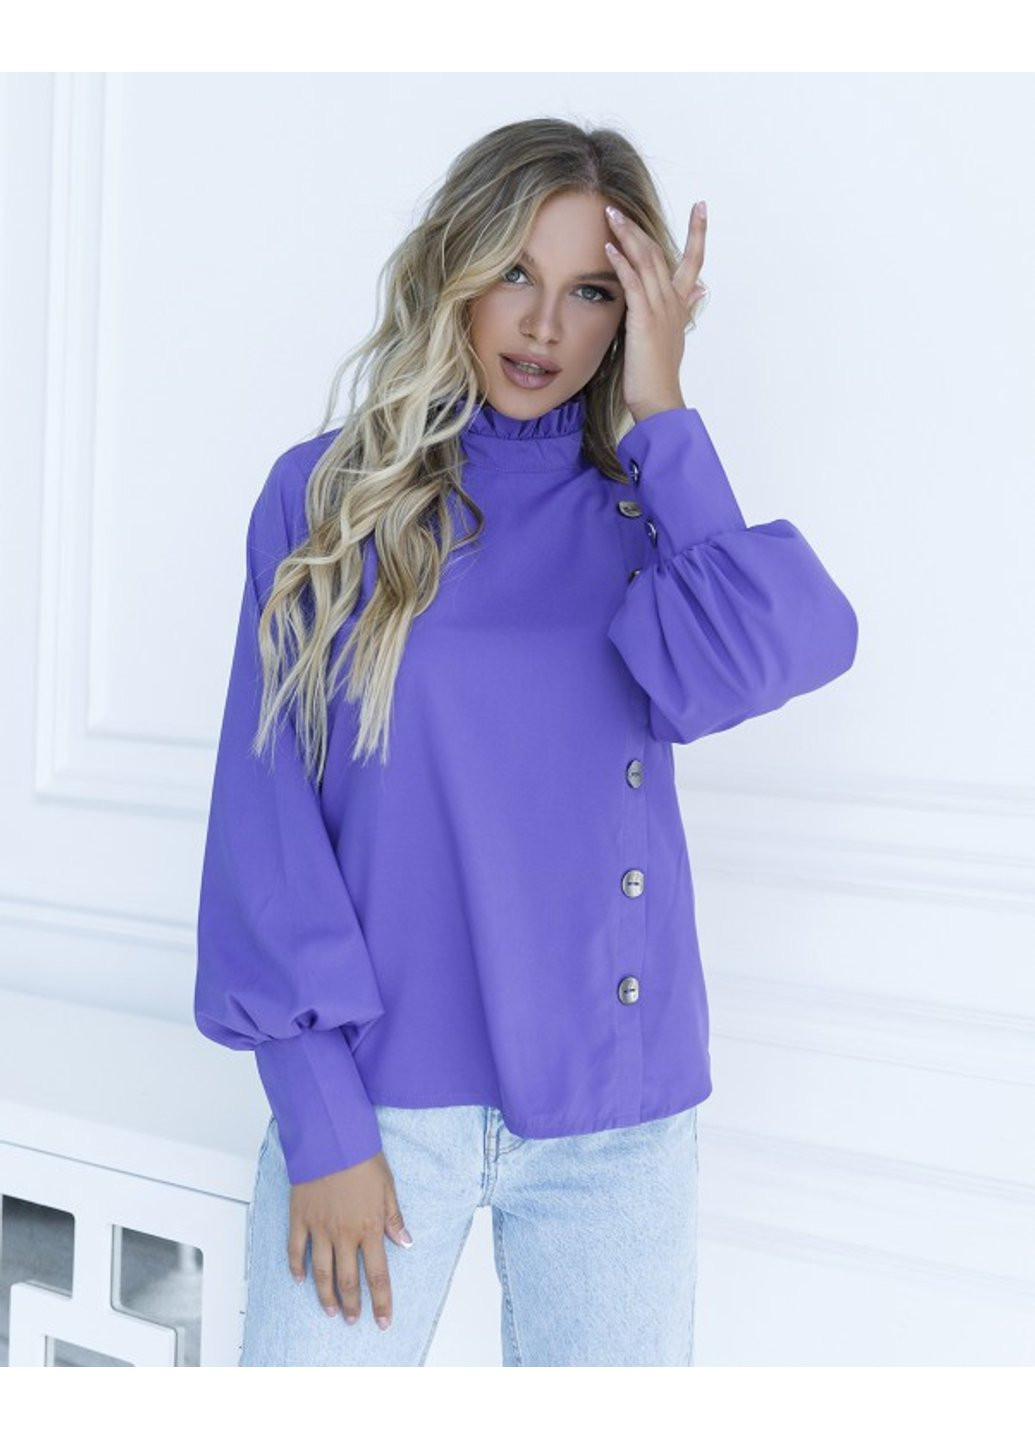 Фиолетовая демисезонная блуза sa-10 s фиолетовый ISSA PLUS